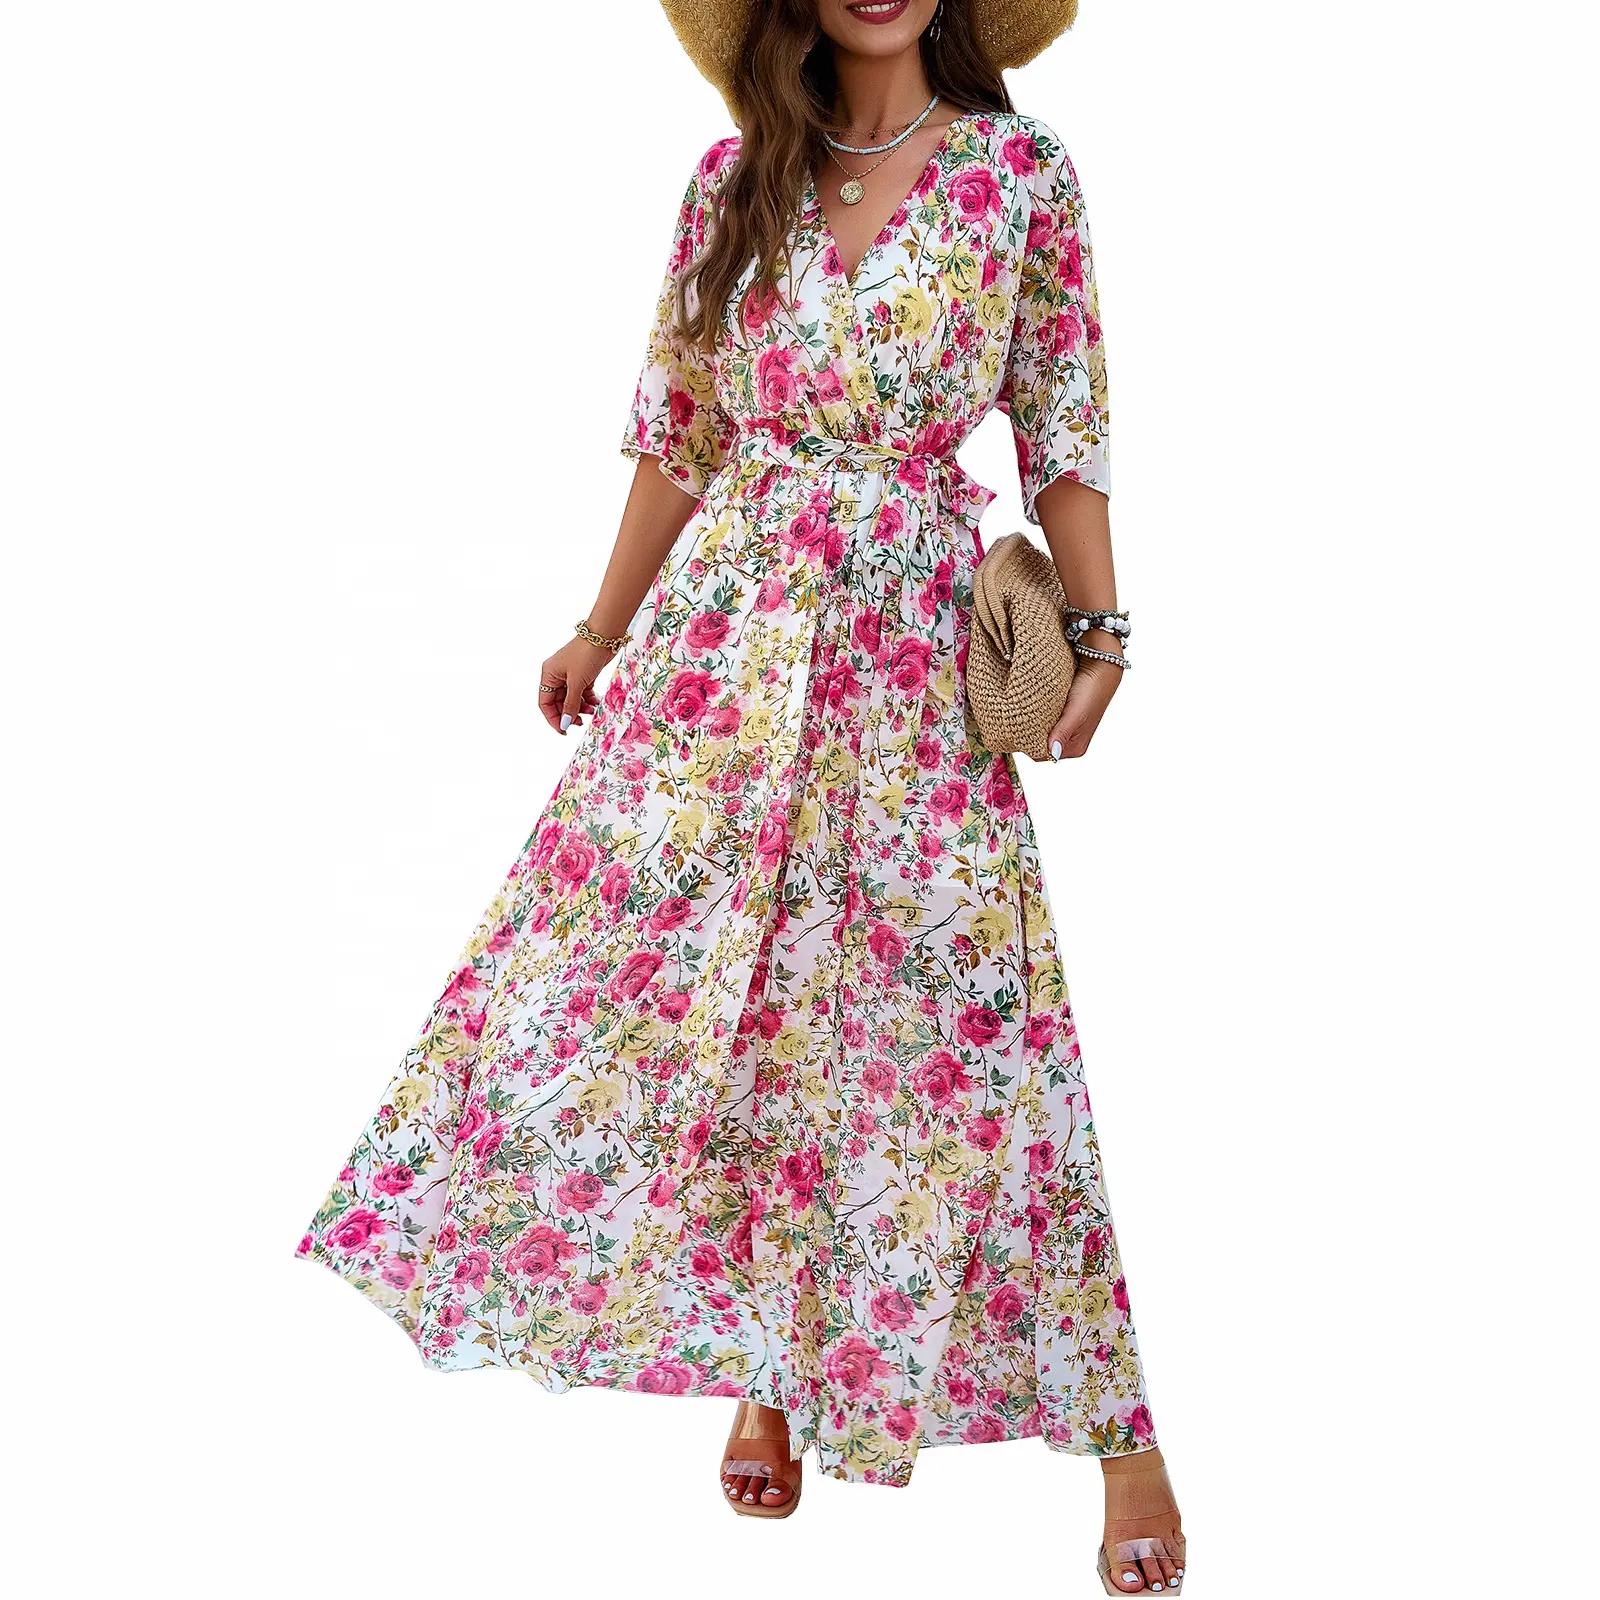 Robe tissée fleur imprimé Maxi robe personnalisable été haute robe fendue pour les femmes de jour